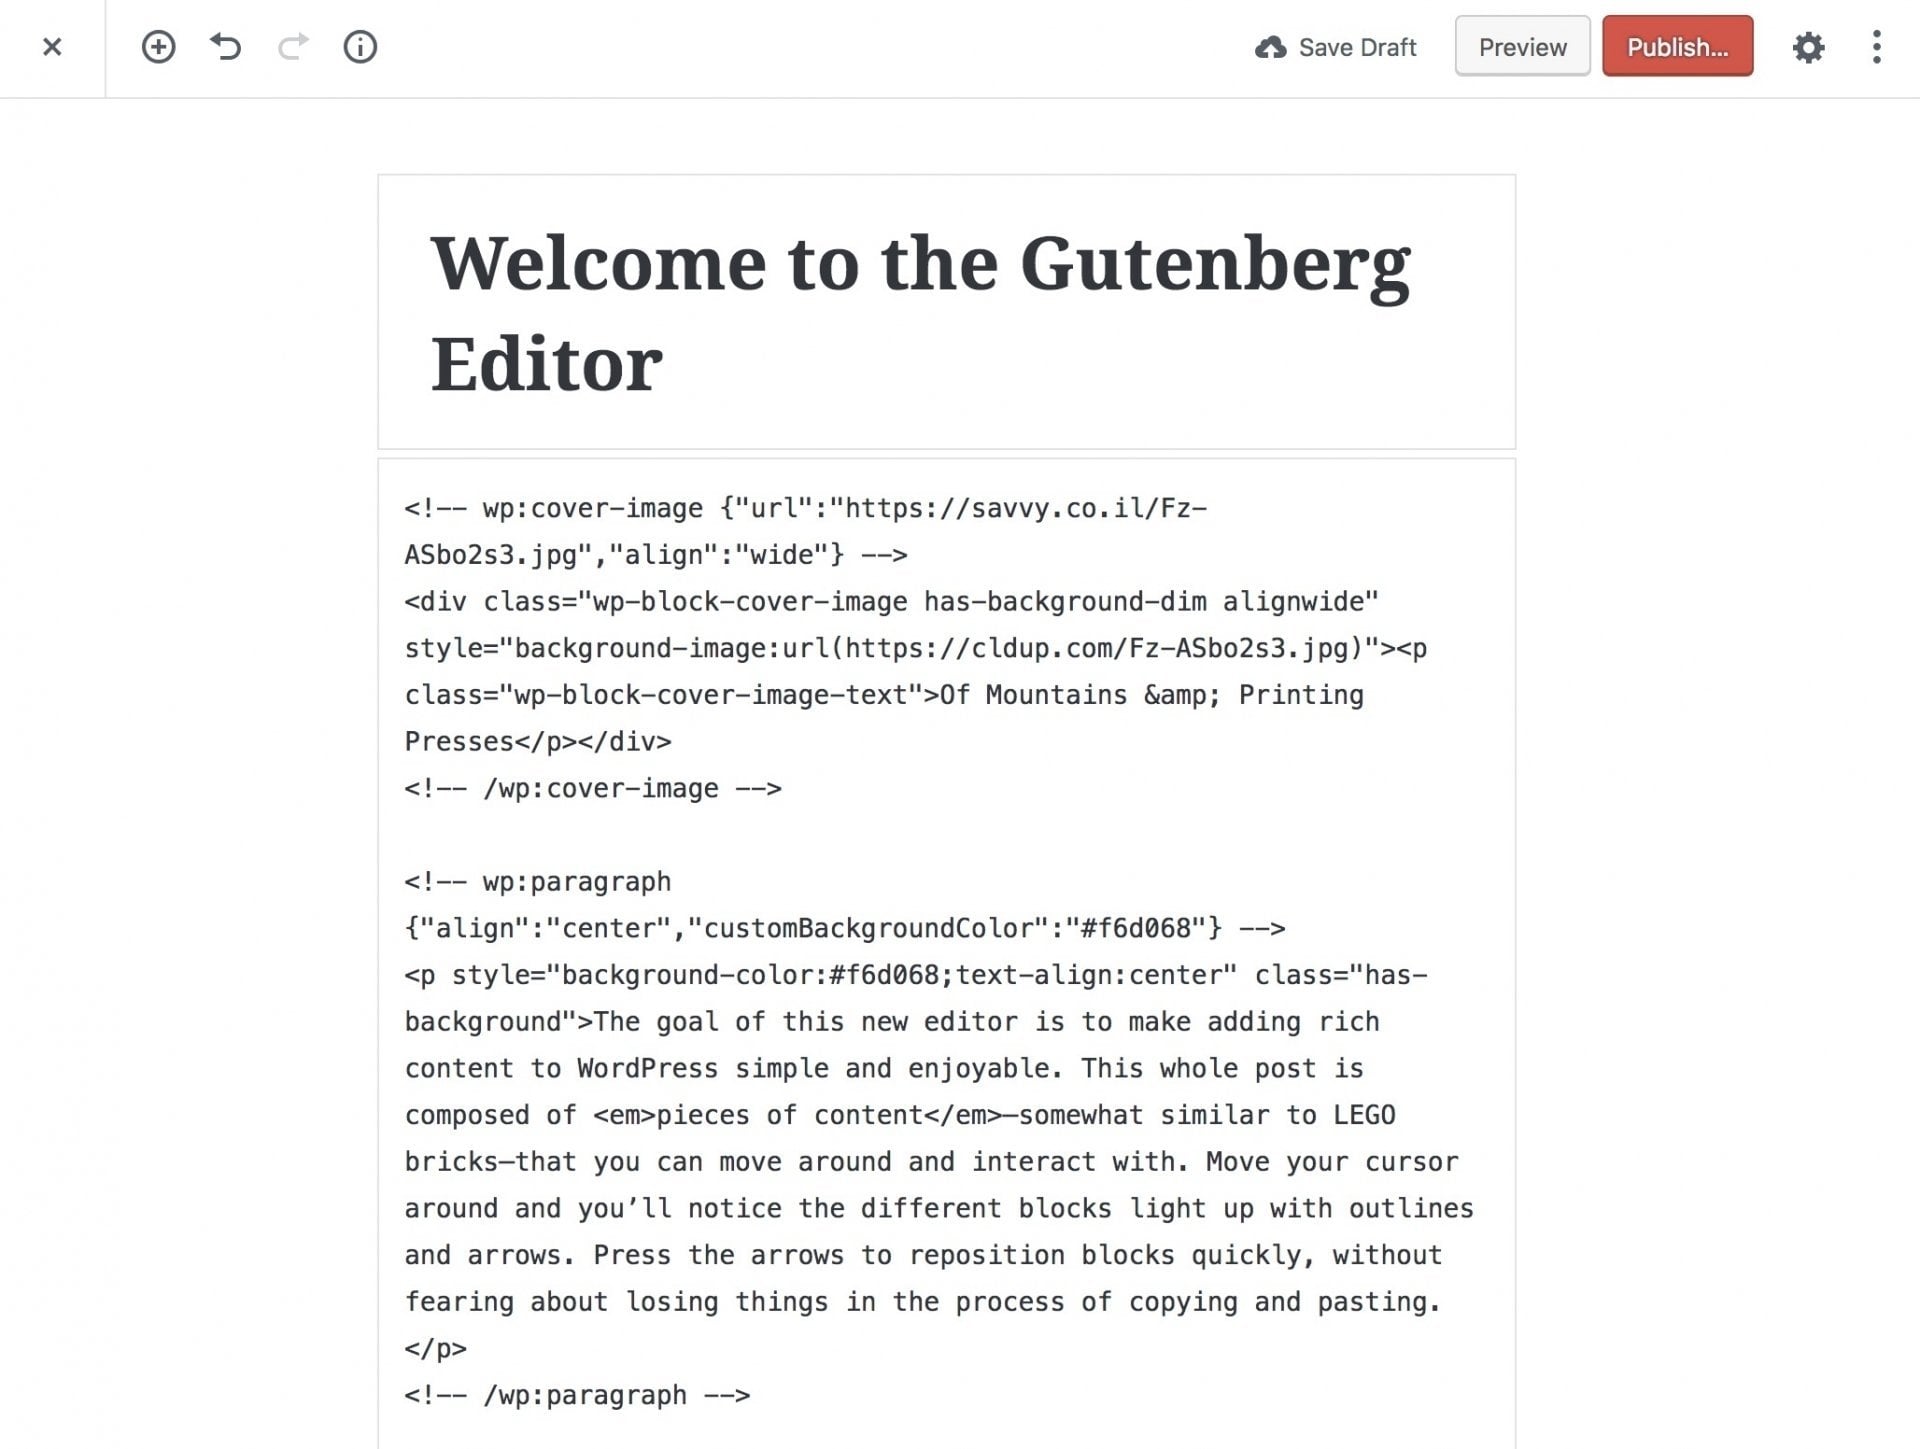 Blocks as Stored in the Database - Gutenberg